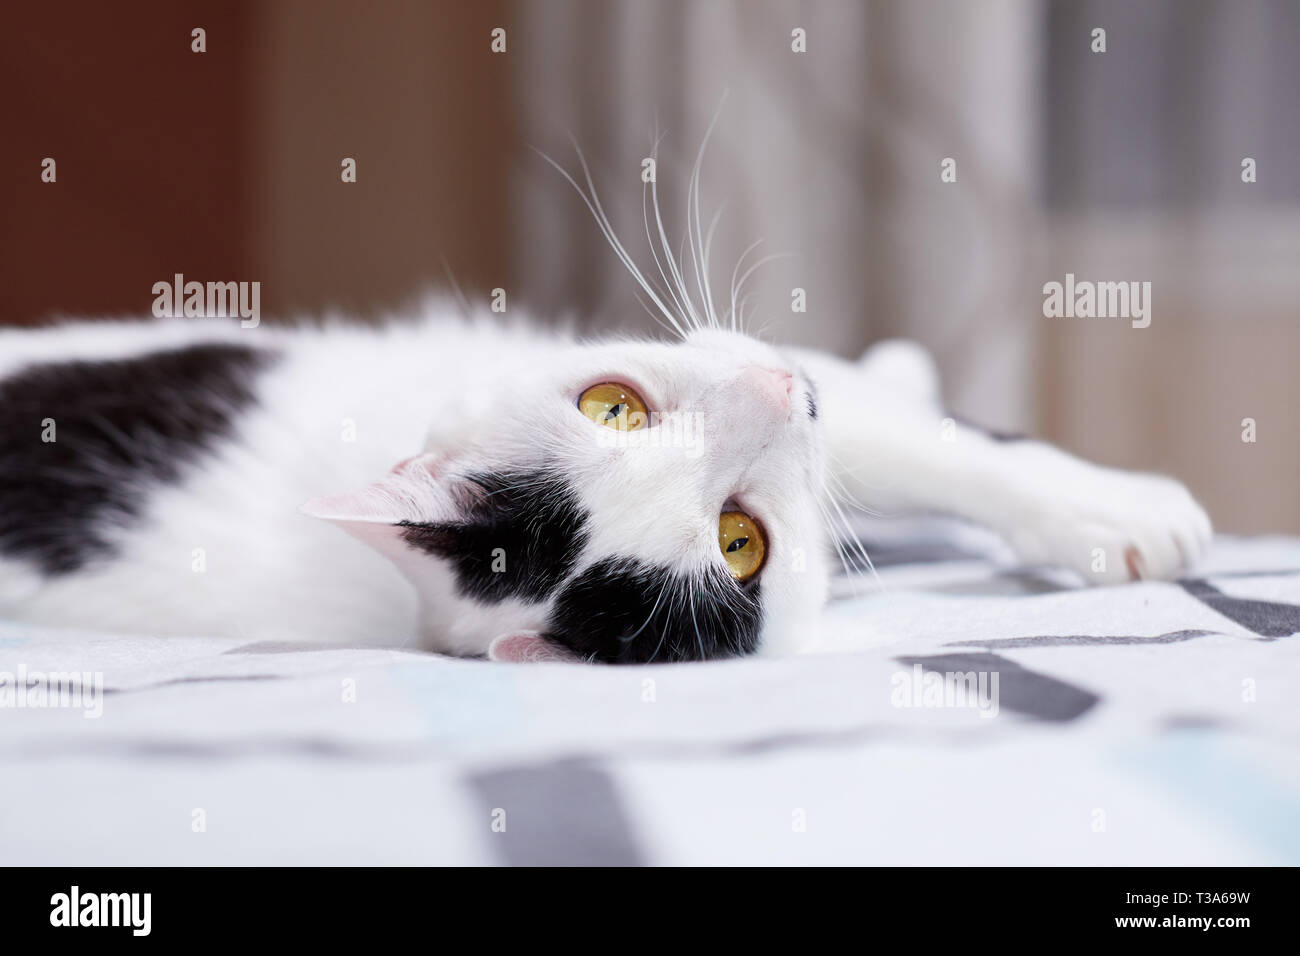 Un relajado gato blanco con marcas negras está rodando sobre una cama, en su casa y se siente feliz Foto de stock